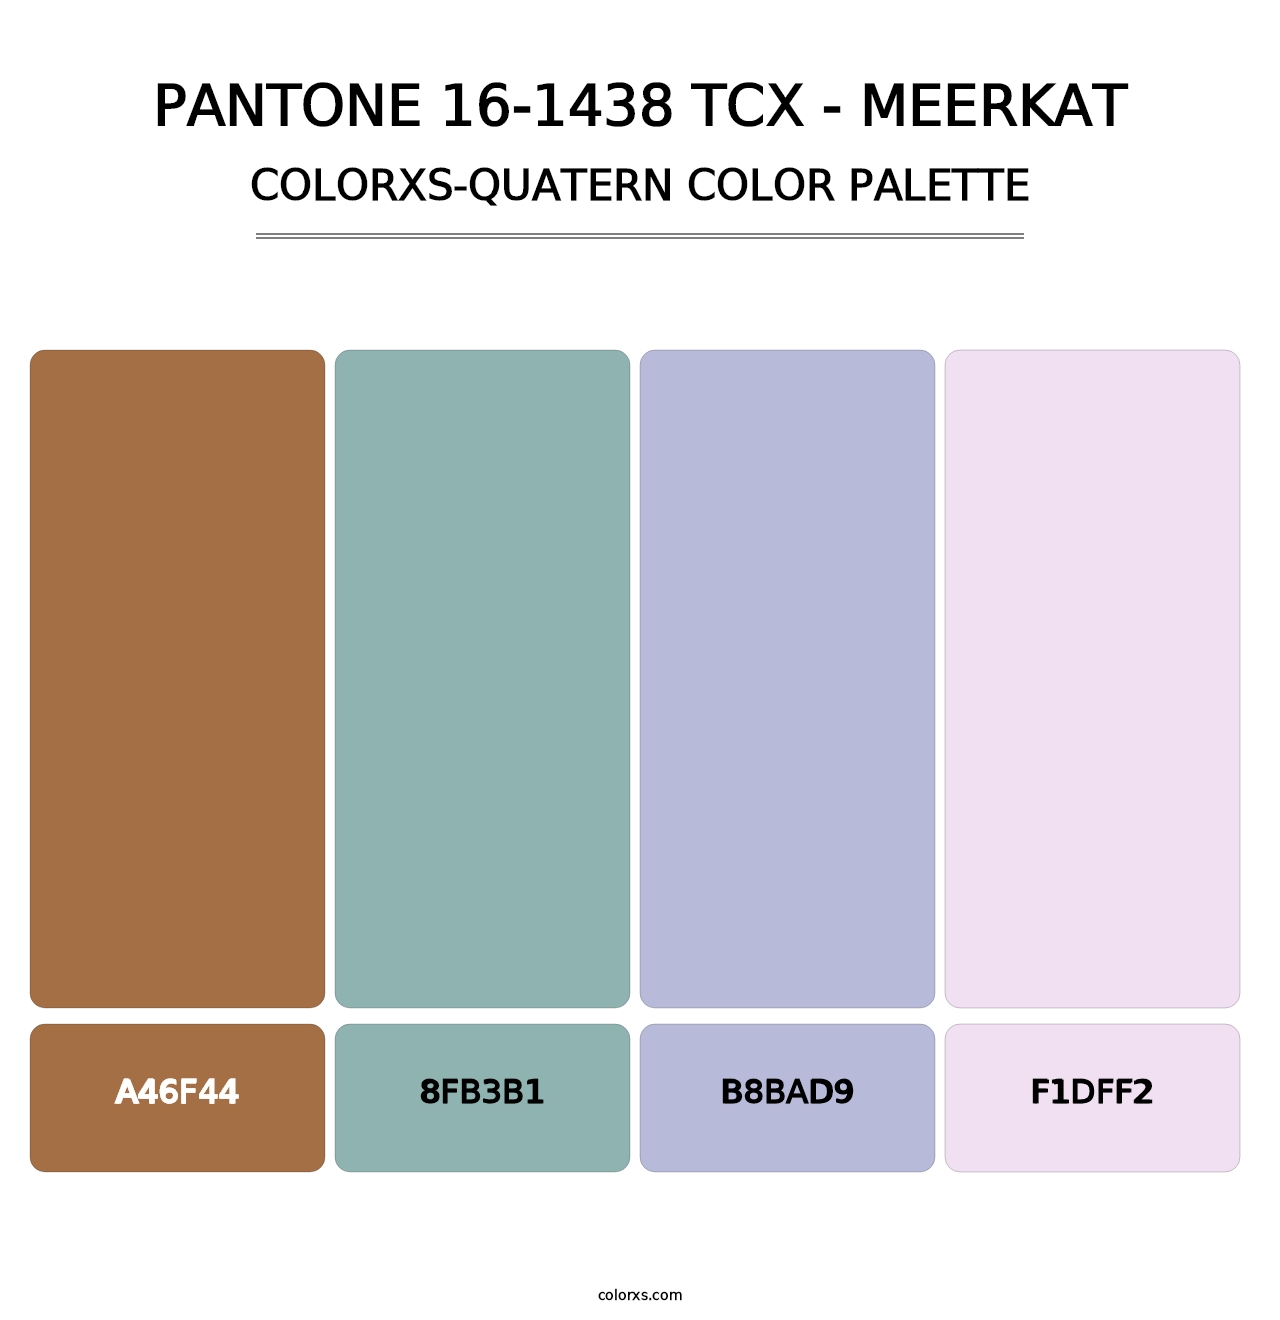 PANTONE 16-1438 TCX - Meerkat - Colorxs Quatern Palette